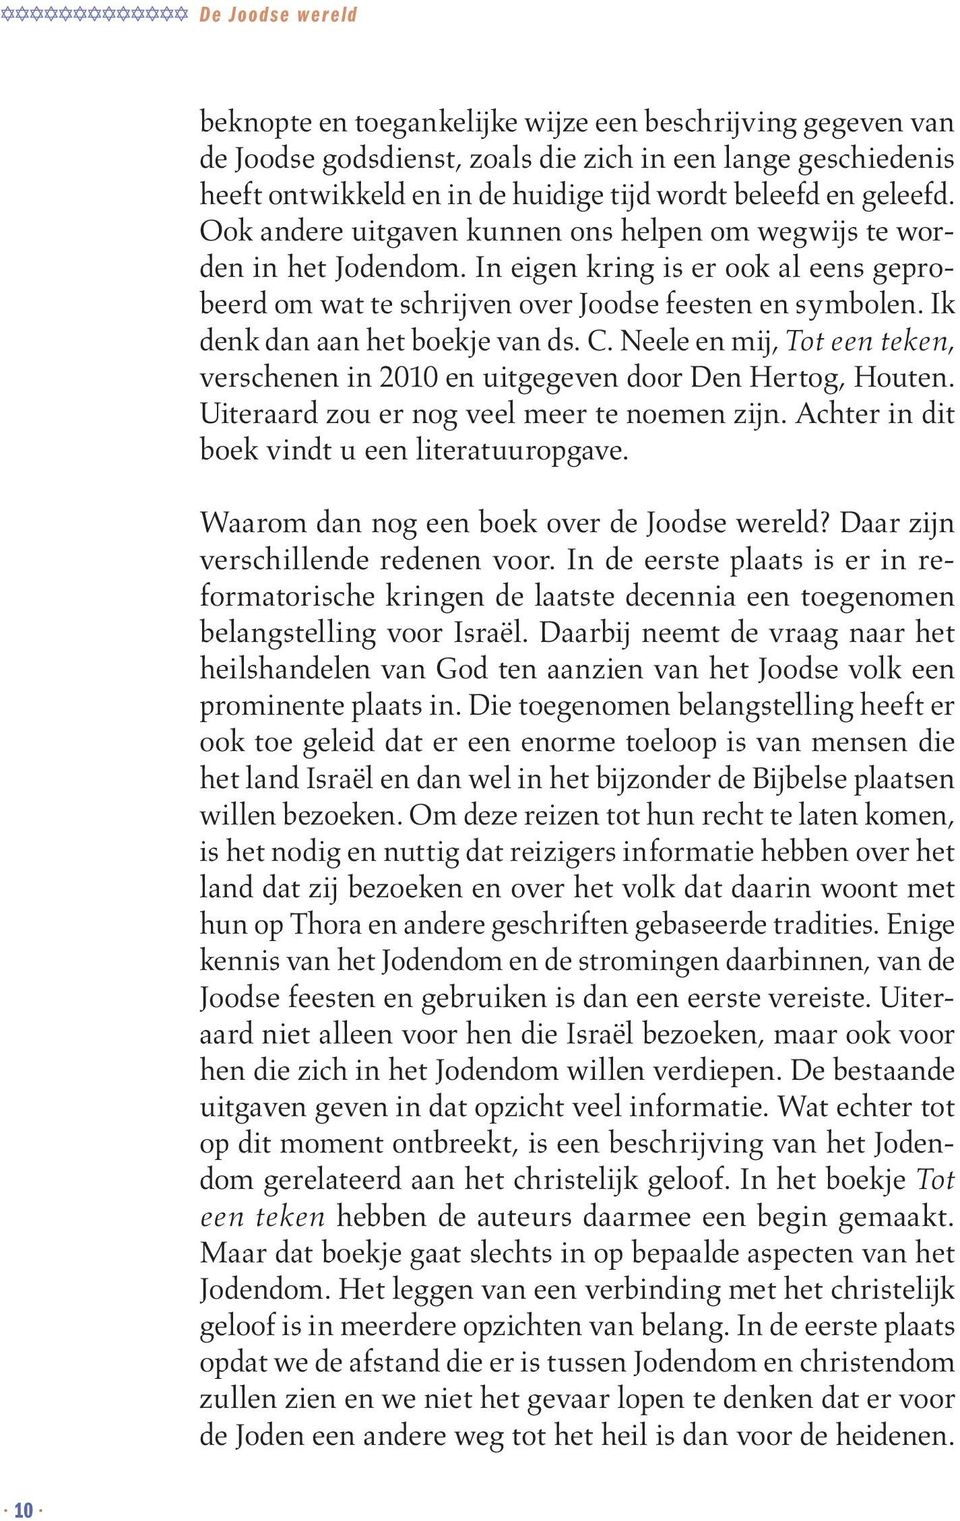 Ik denk dan aan het boekje van ds. C. Neele en mij, Tot een teken, verschenen in 2010 en uitgegeven door Den Hertog, Houten. Uiteraard zou er nog veel meer te noemen zijn.